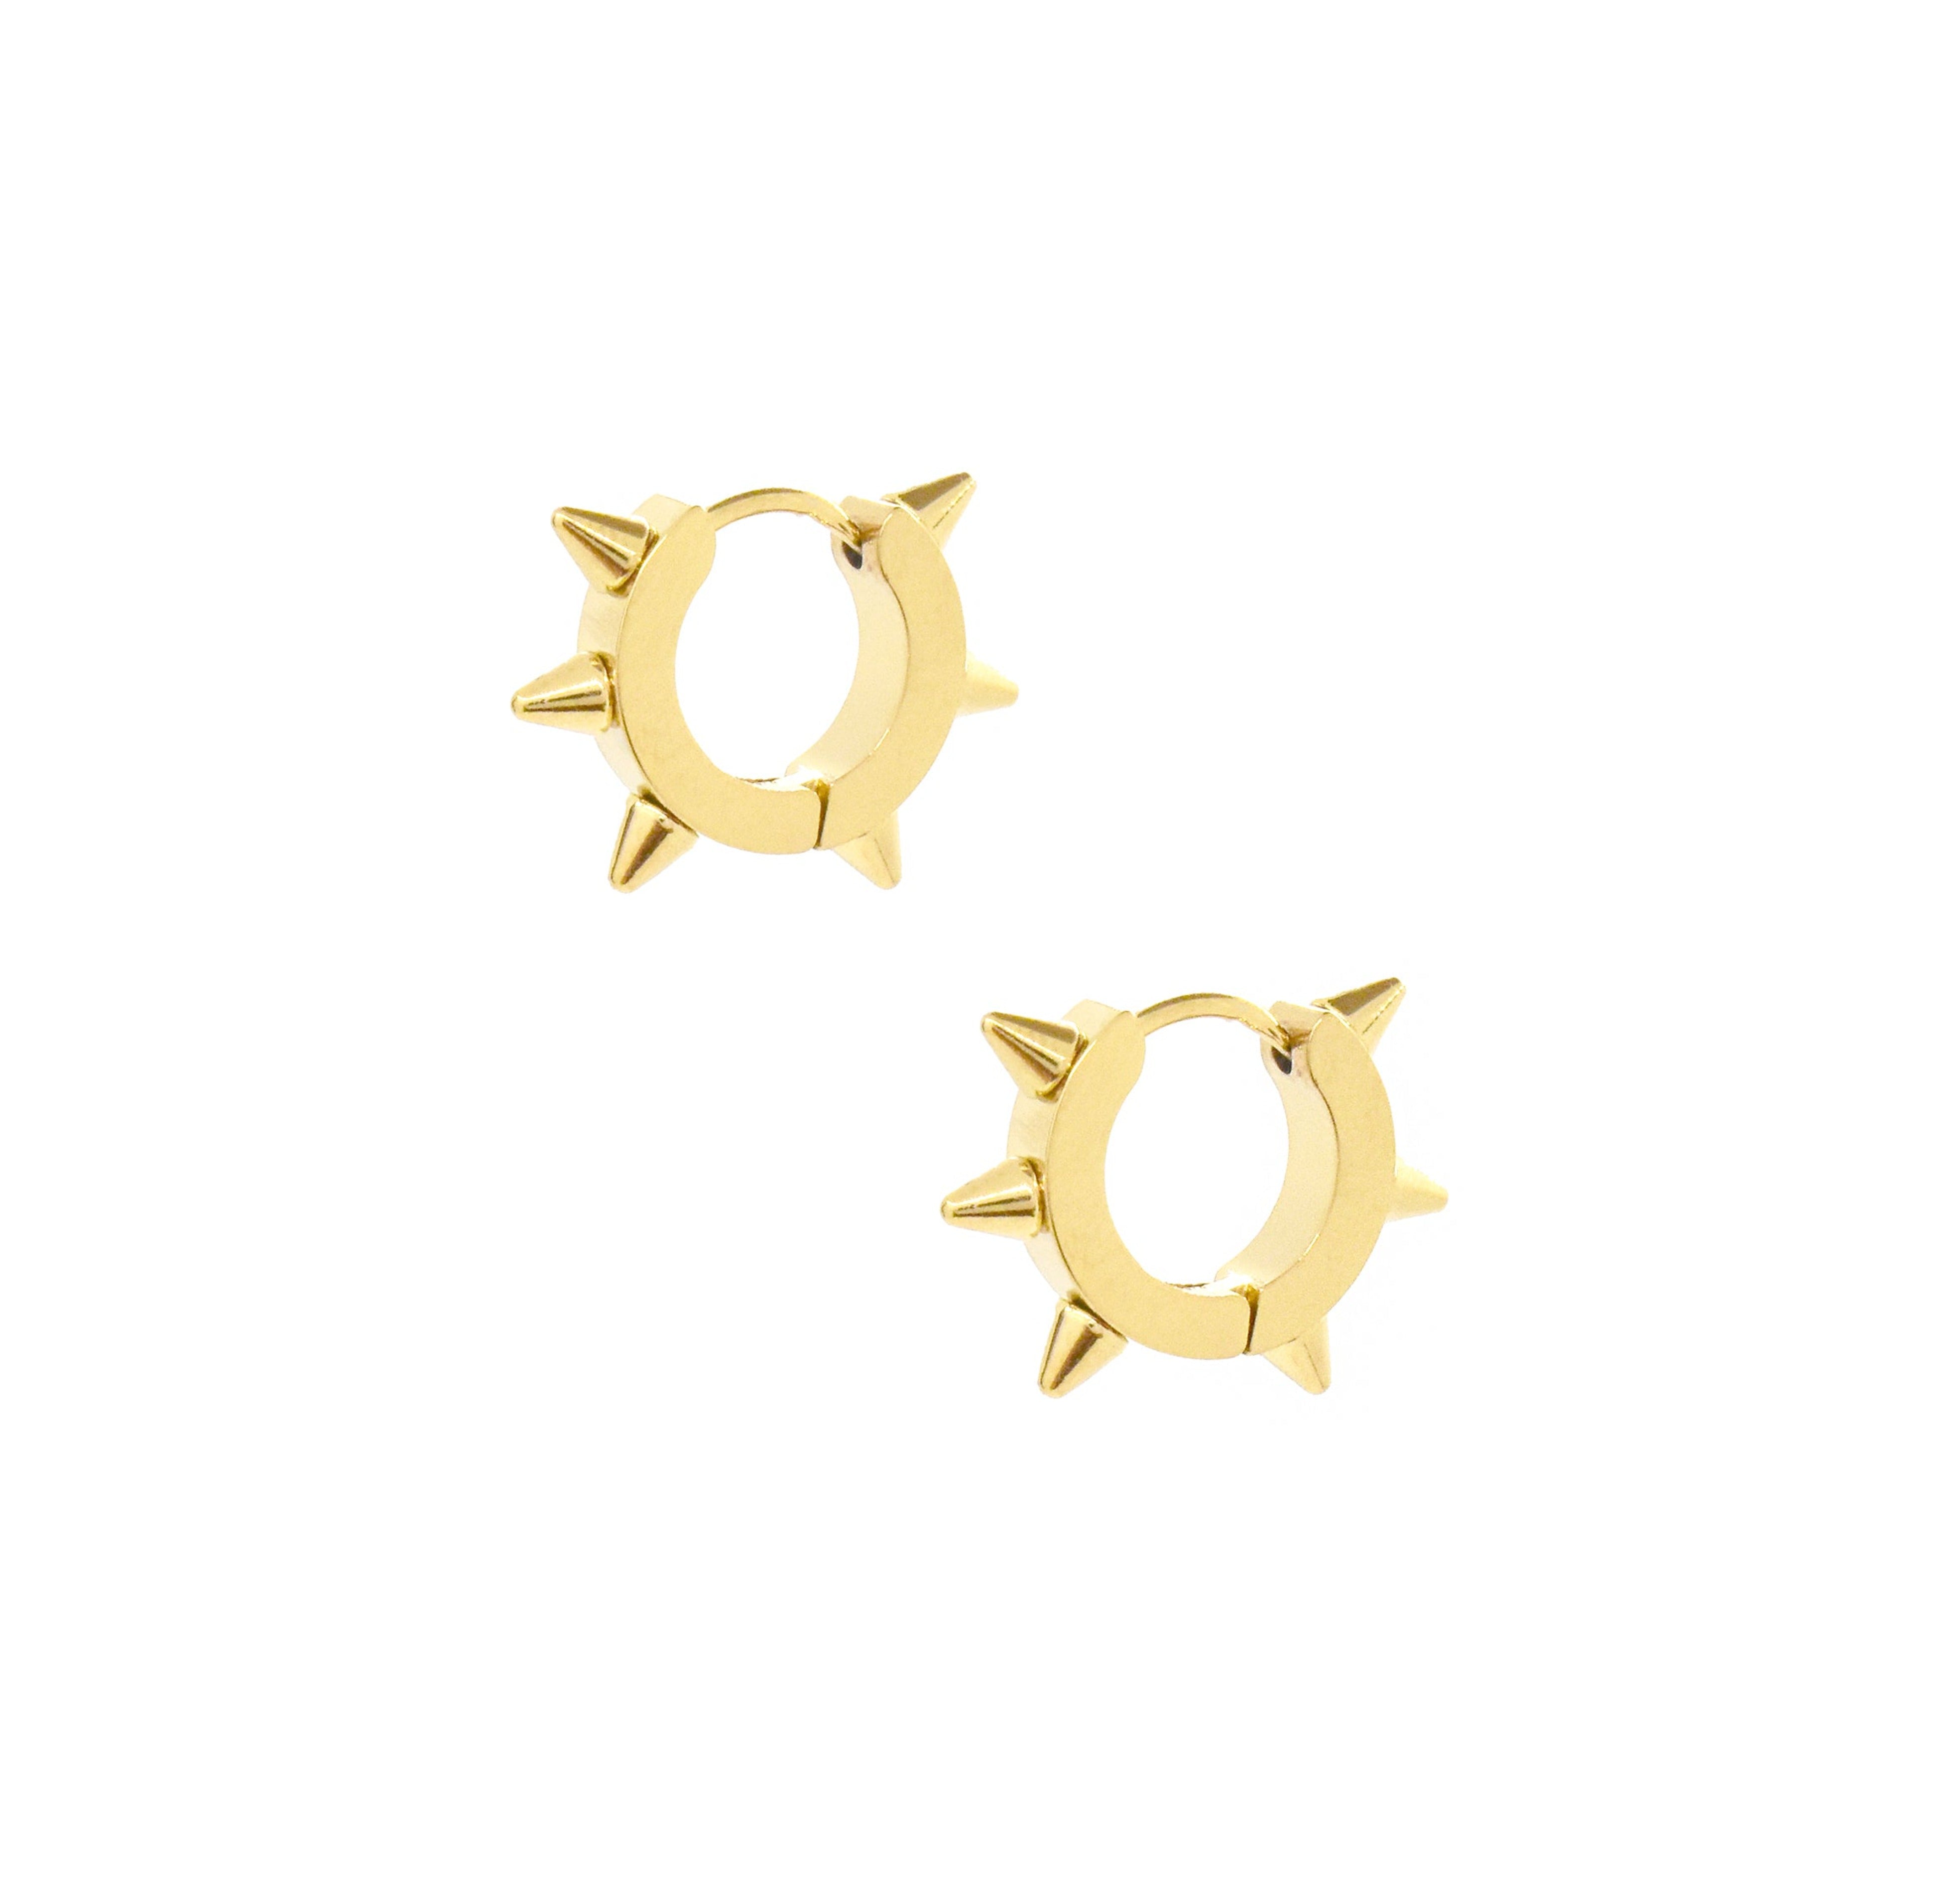 gold spike huggie earrings waterproof jewelry